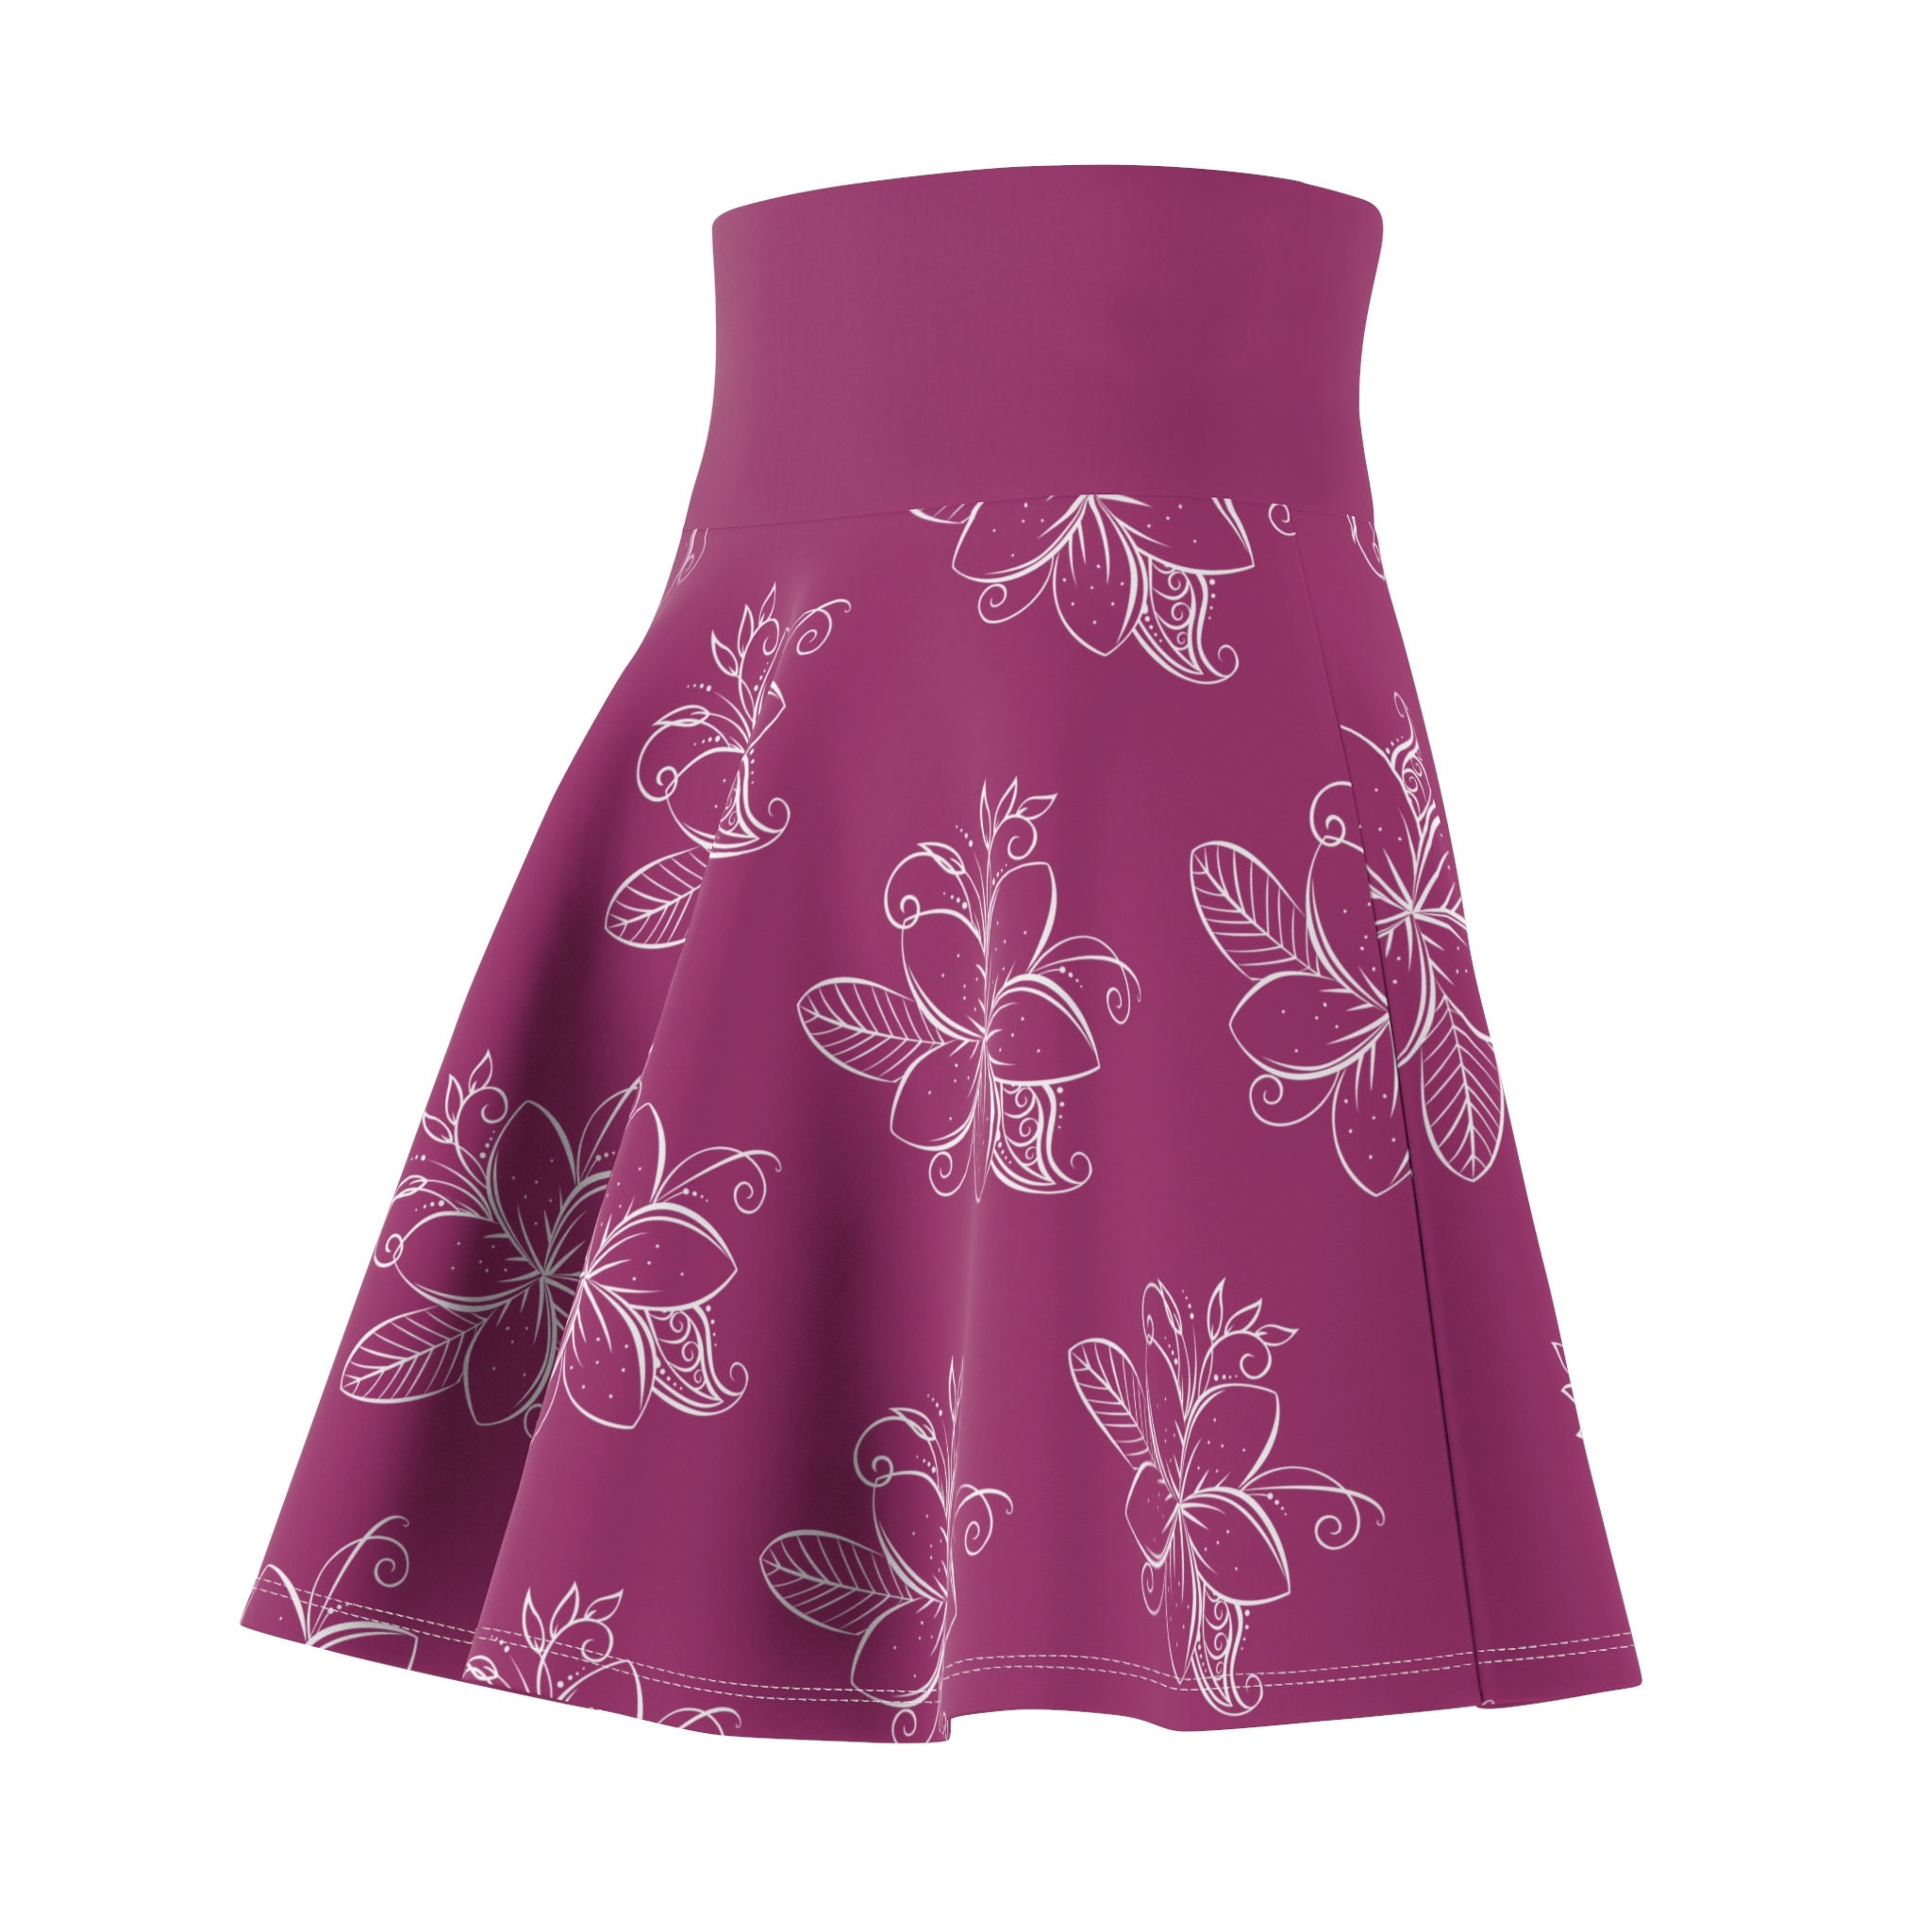 Orchard Flower Pink with Plumerias Skater Skirt, Women's Skater Skirt